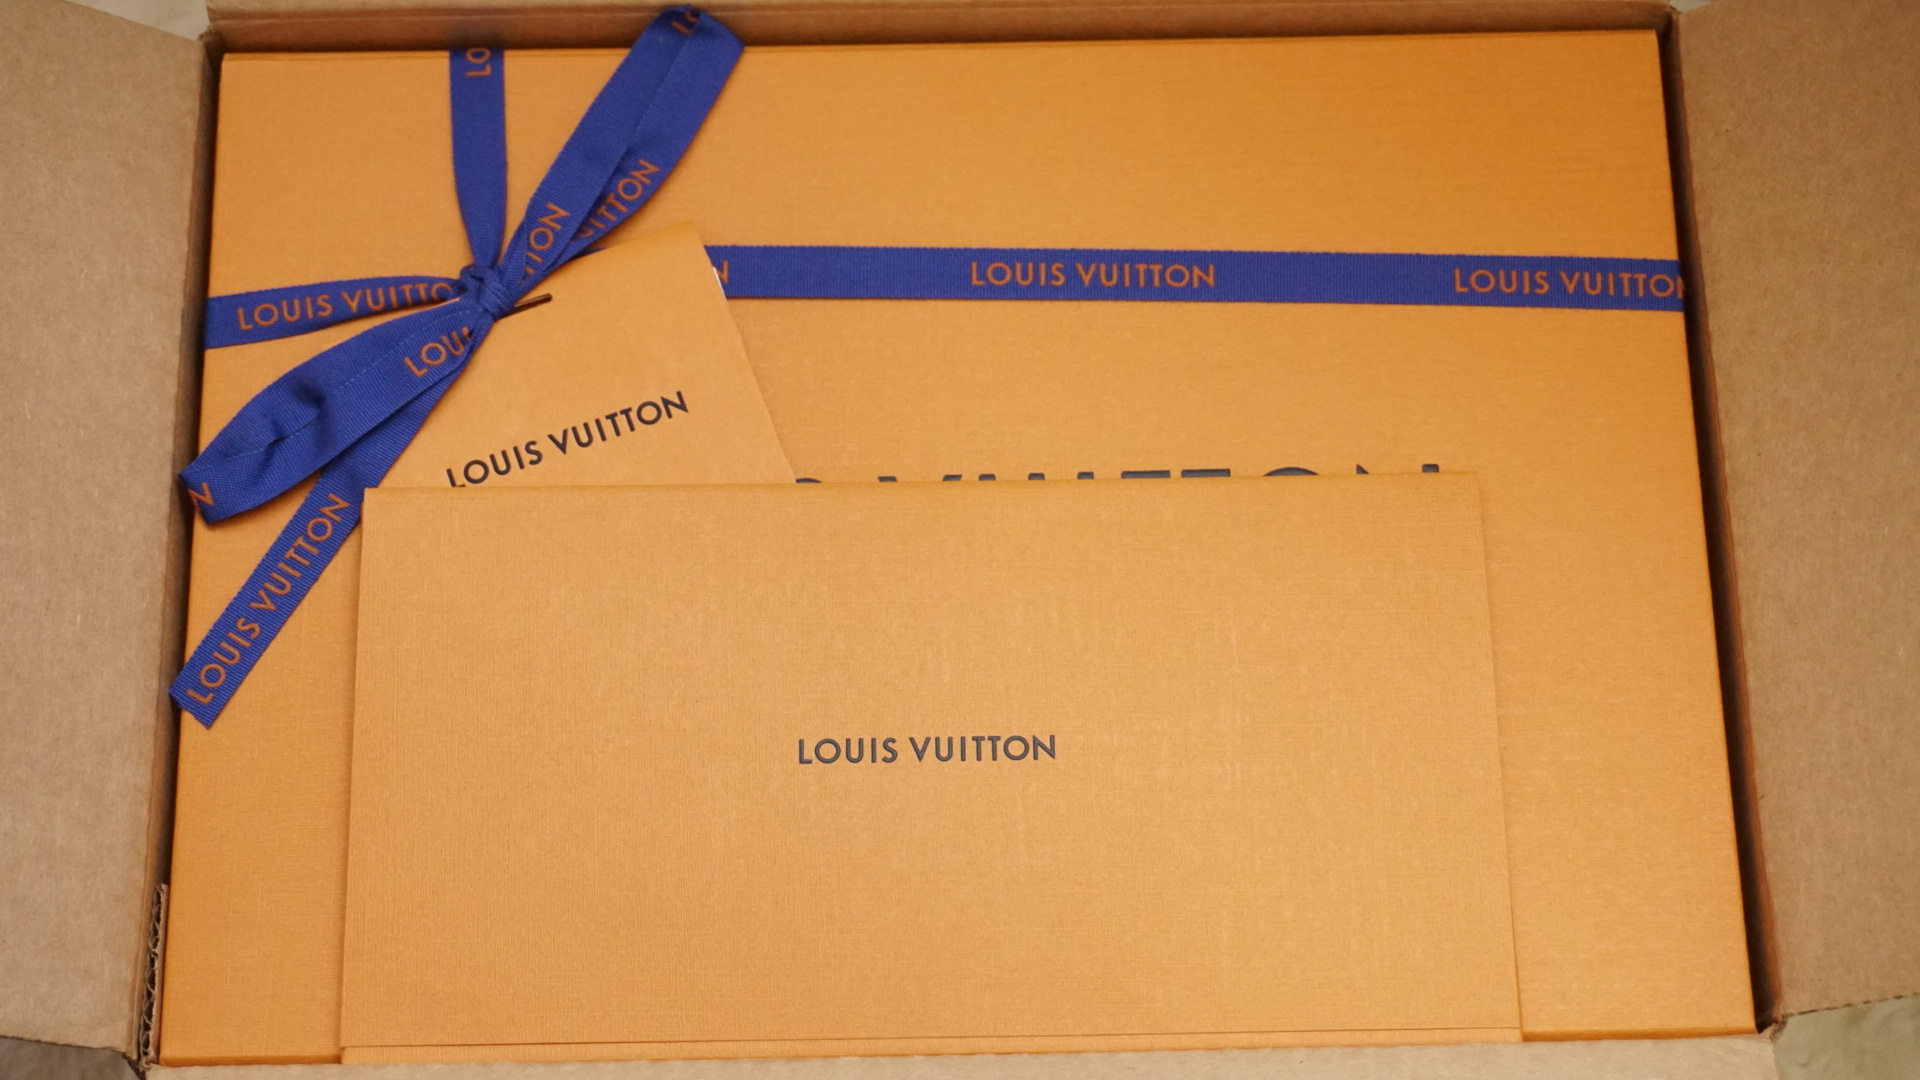 Unboxing my Louis Vuitton